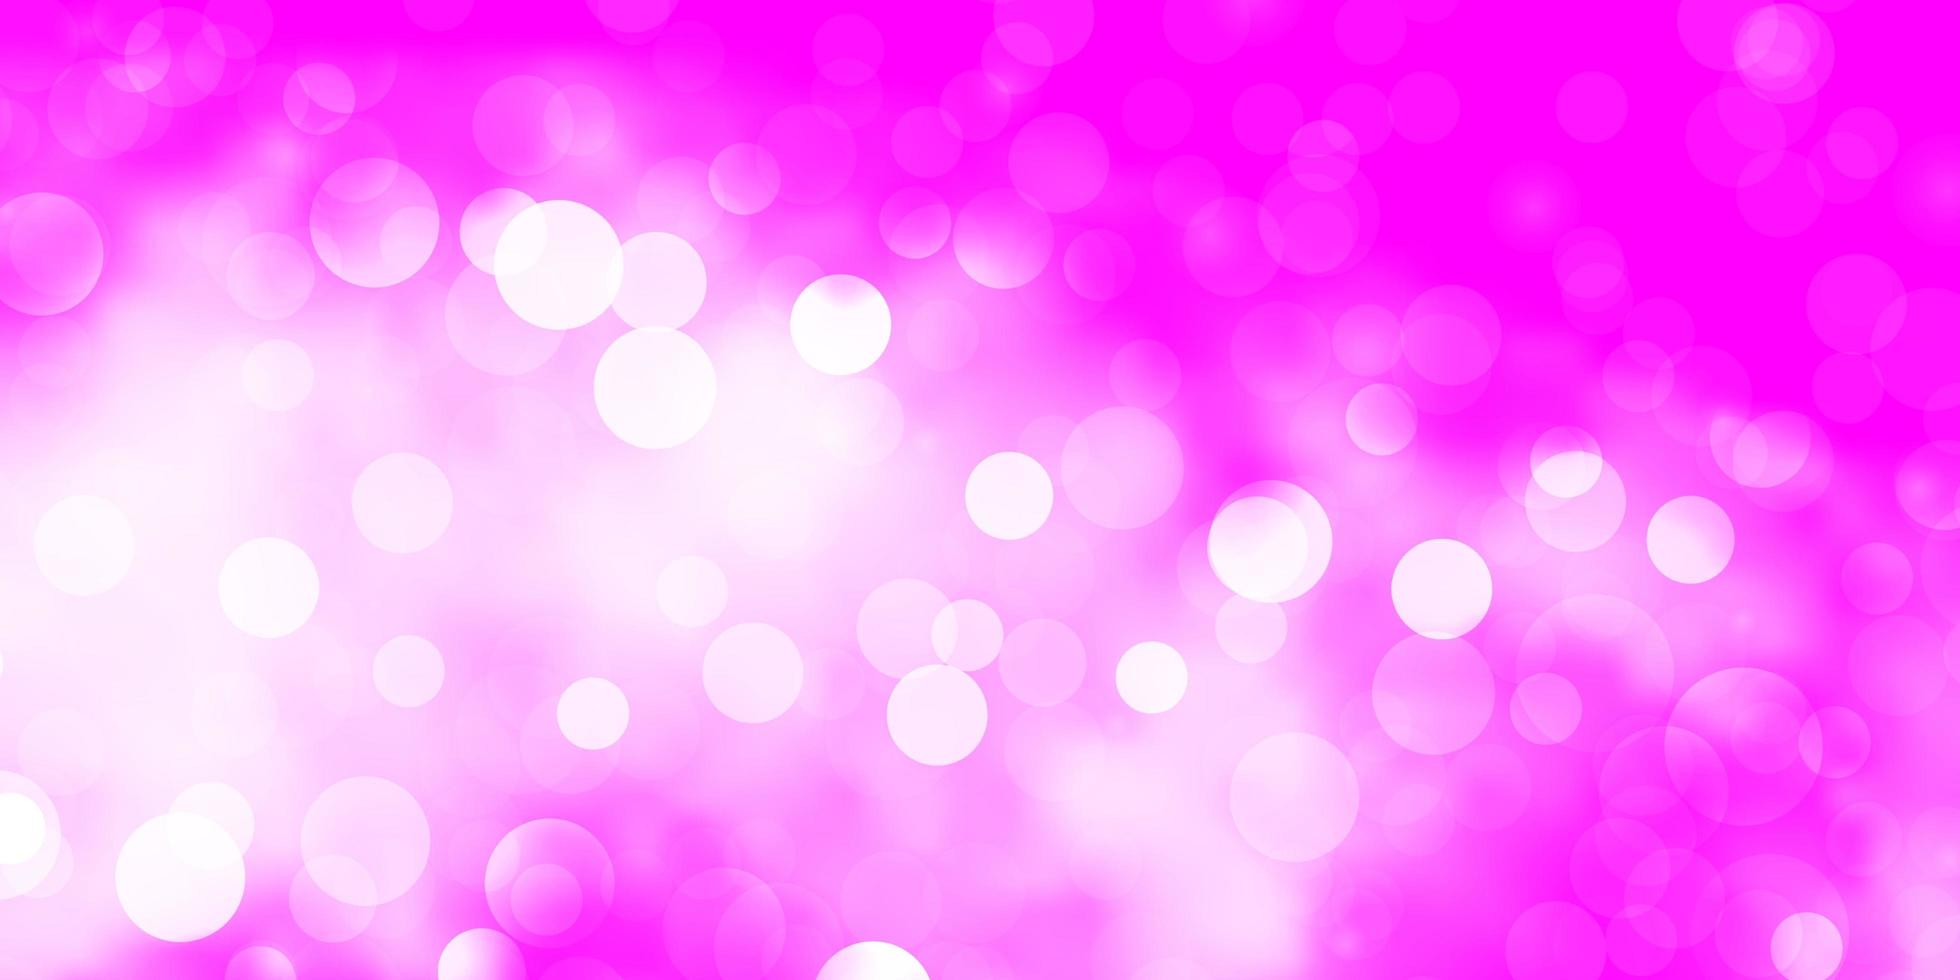 sfondo vettoriale viola chiaro, rosa con cerchi.